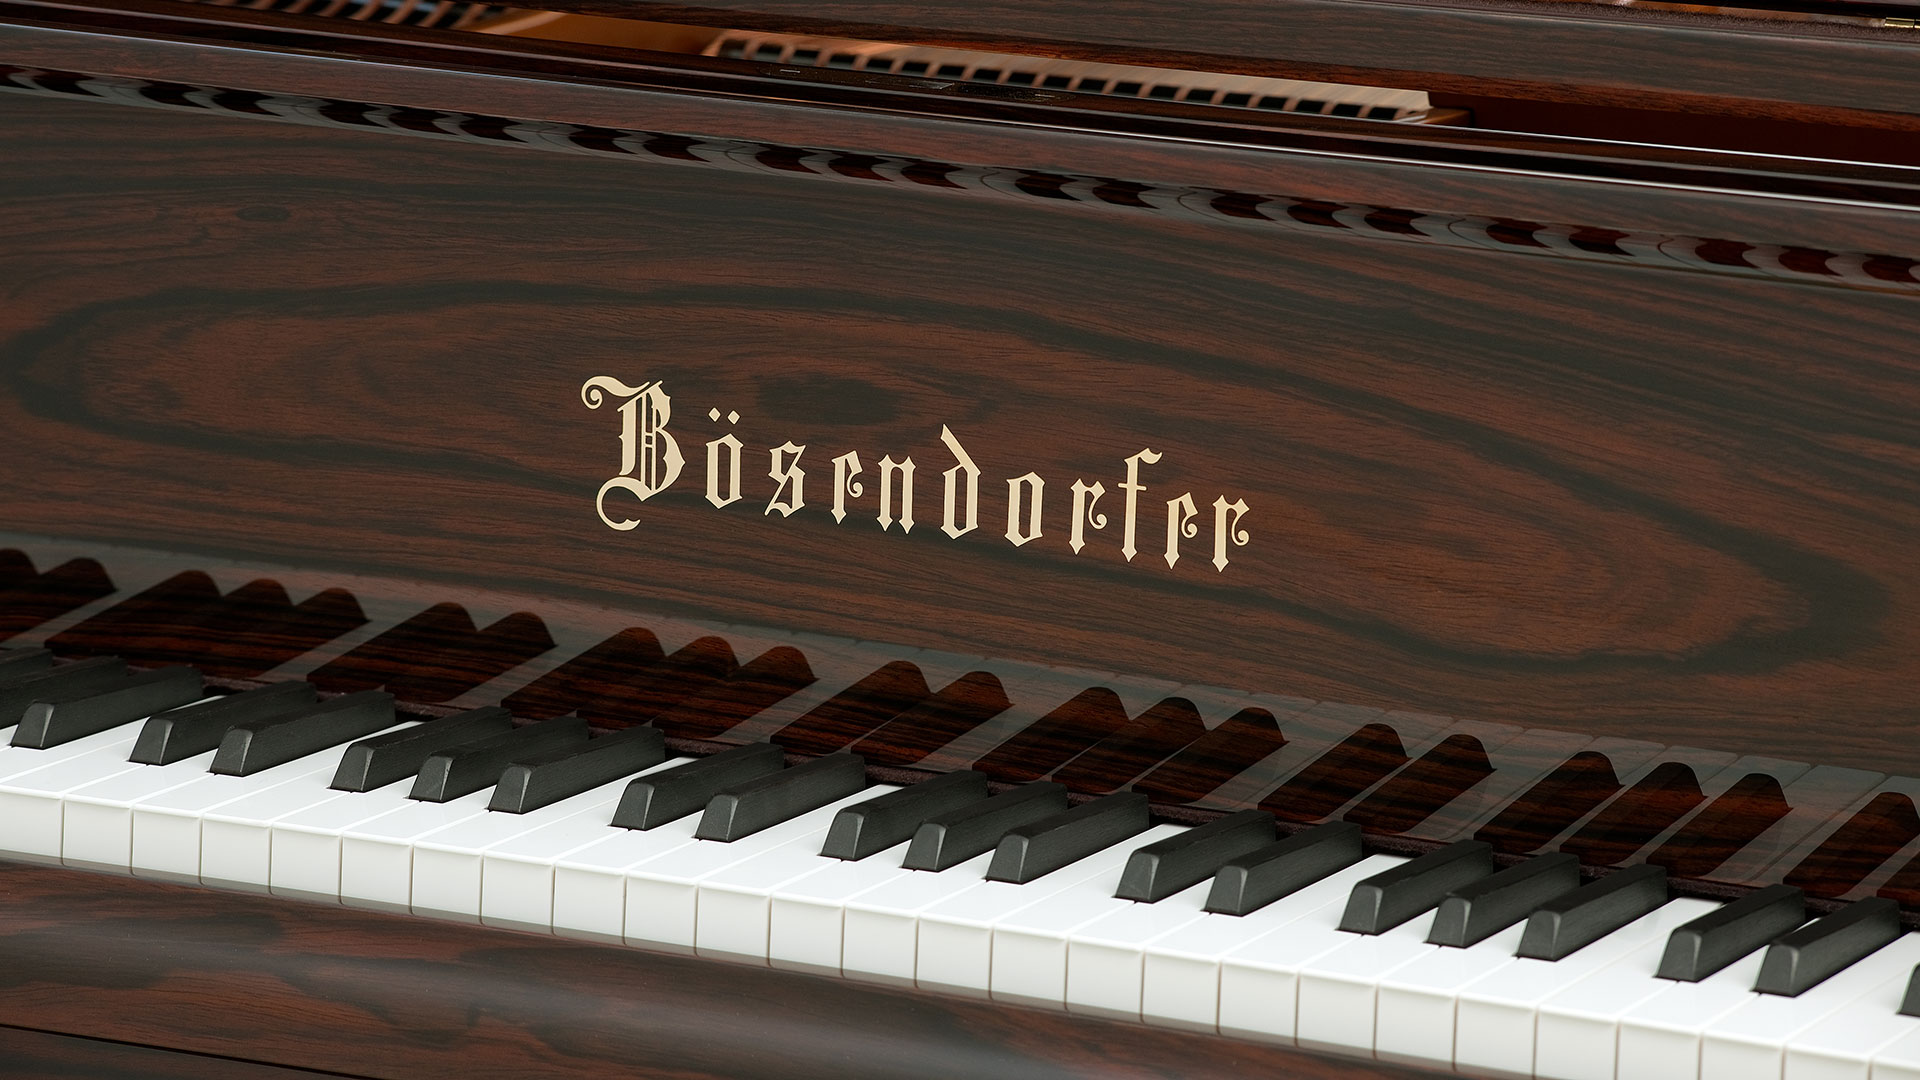 Bosendorfer piano Model 200 grand piano